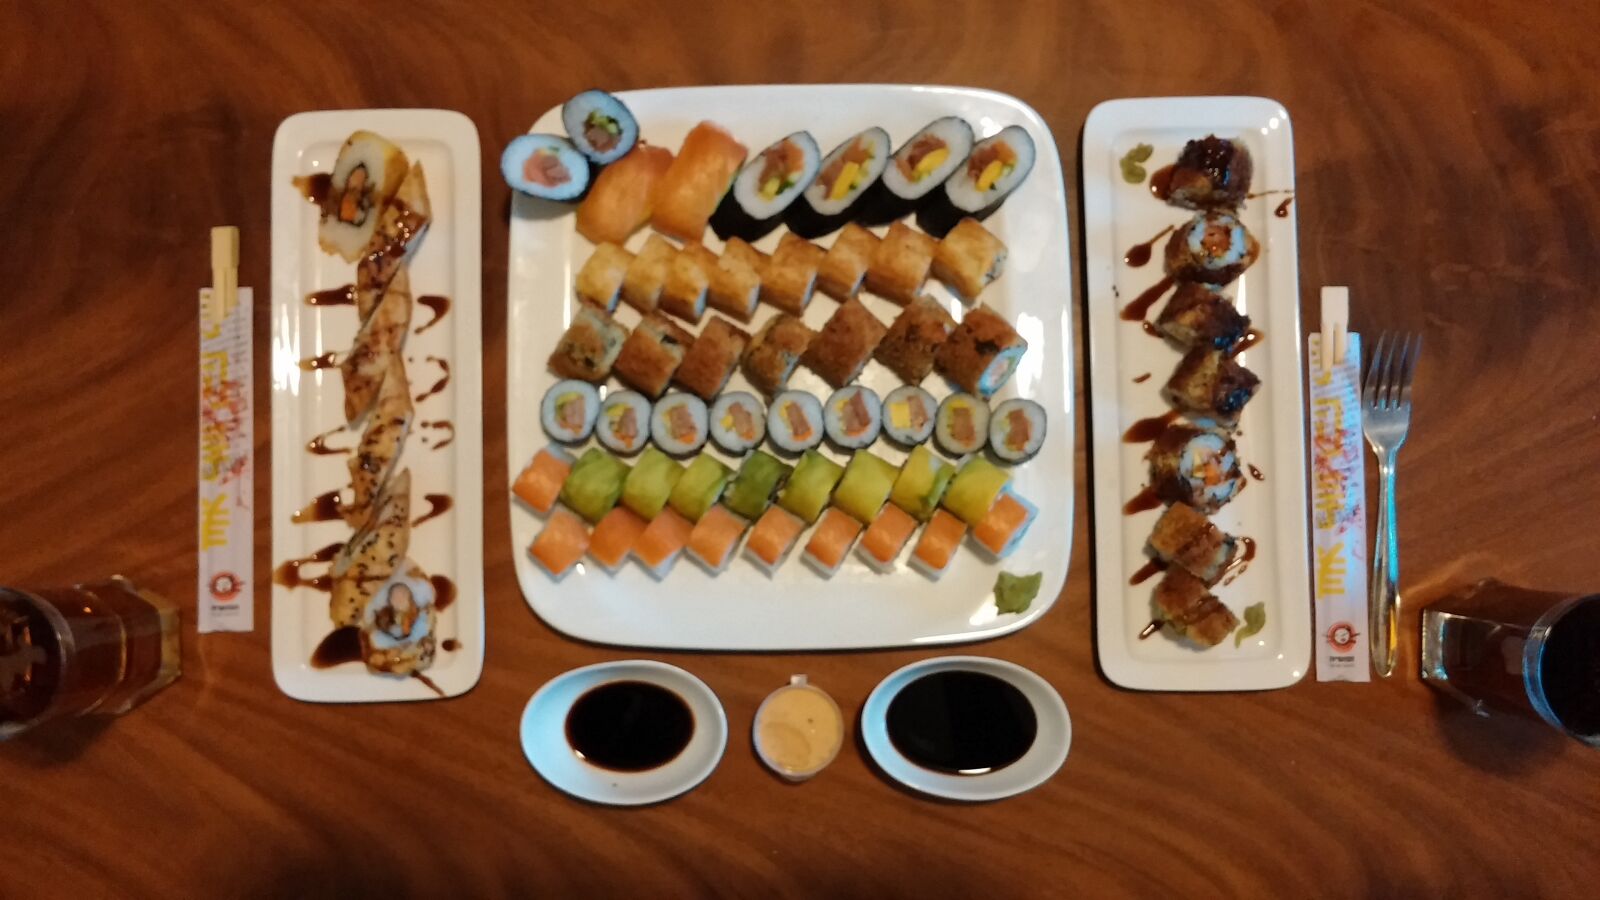 LG G2 sample photo. Sushi, yummy, delicious photography